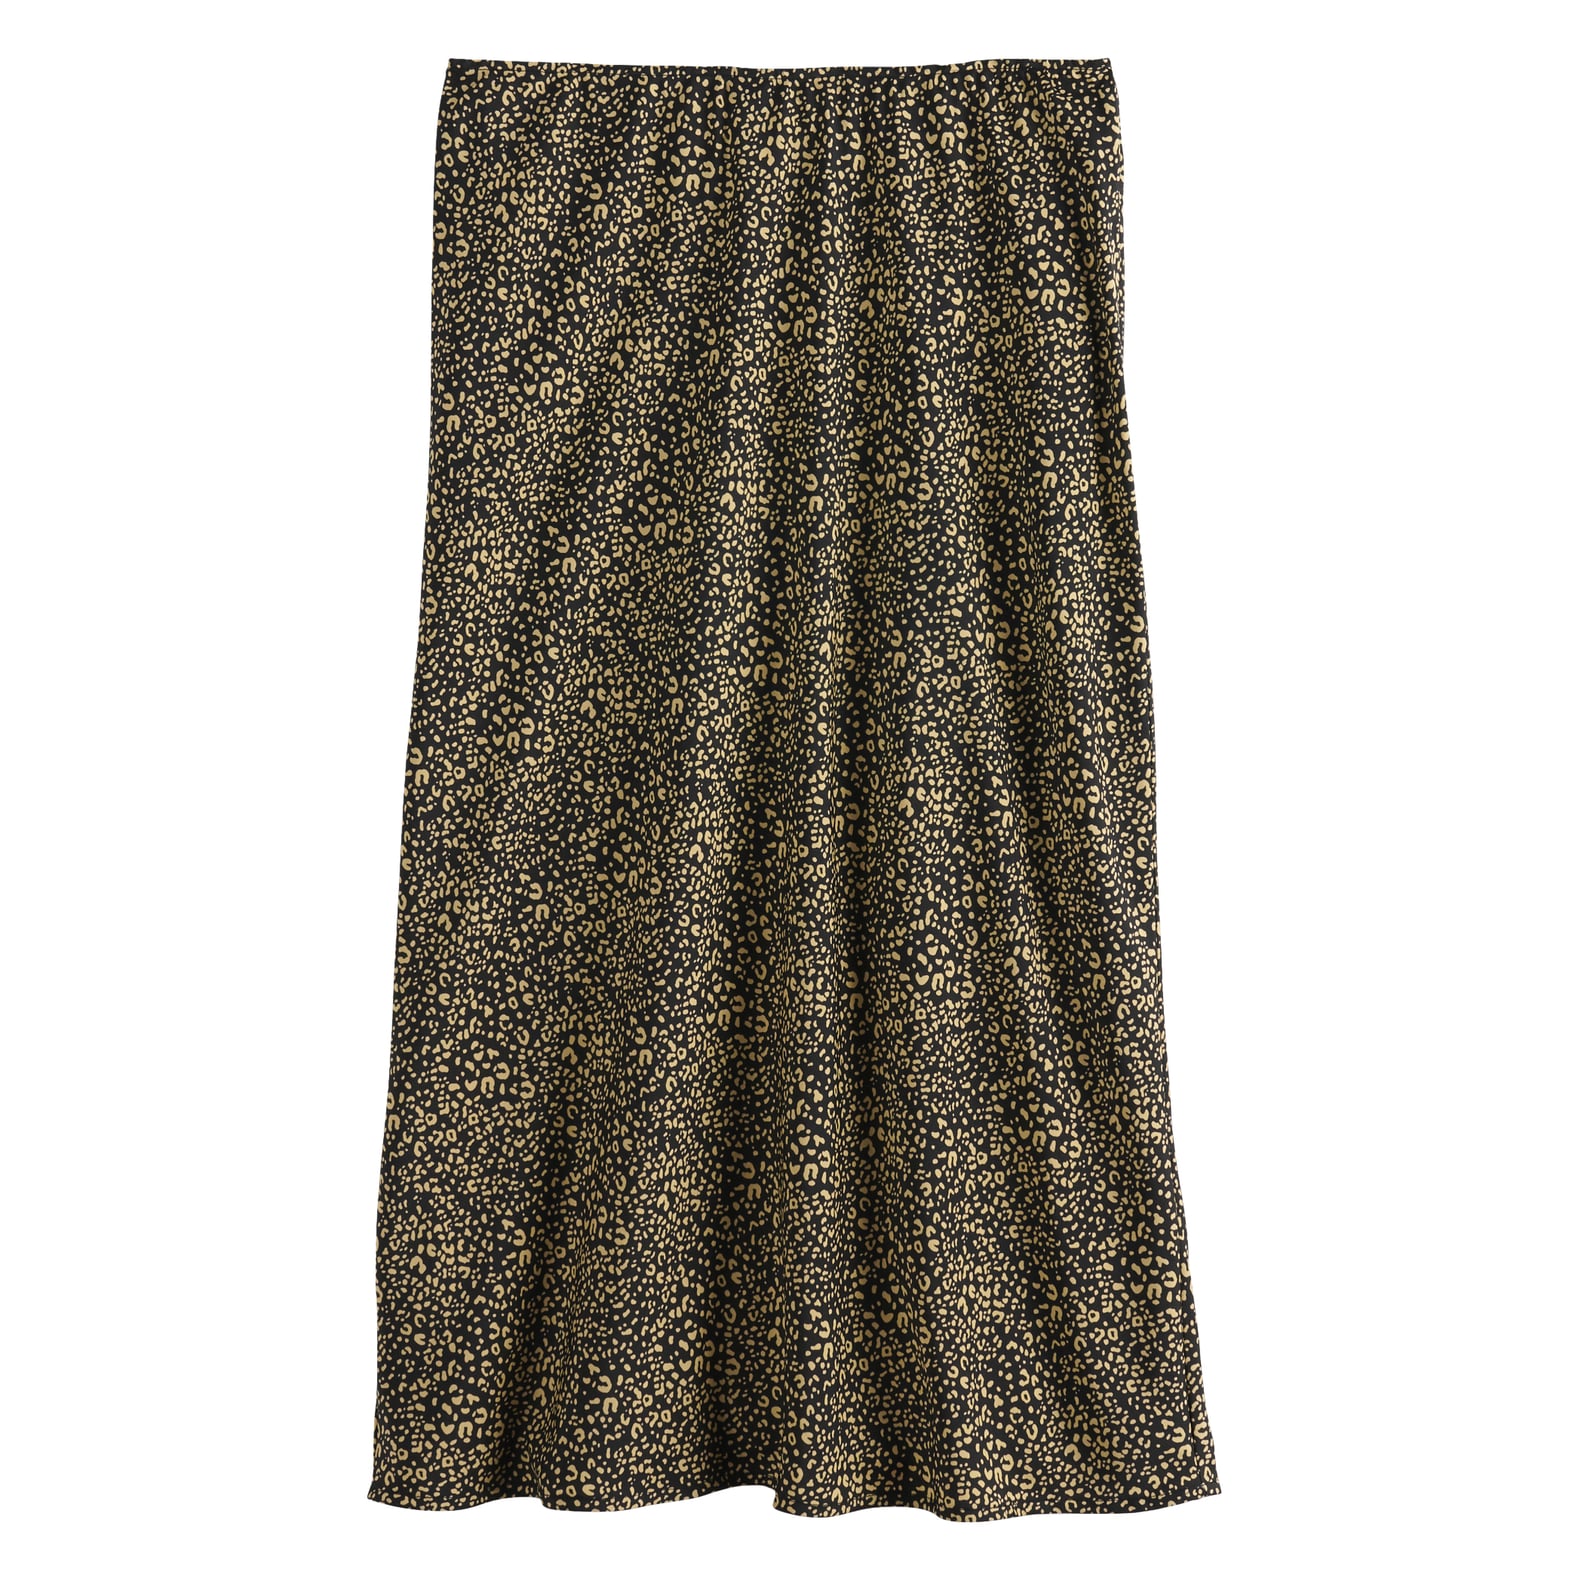 Cute Cheap Slip Skirts For Fall 2019 | POPSUGAR Fashion